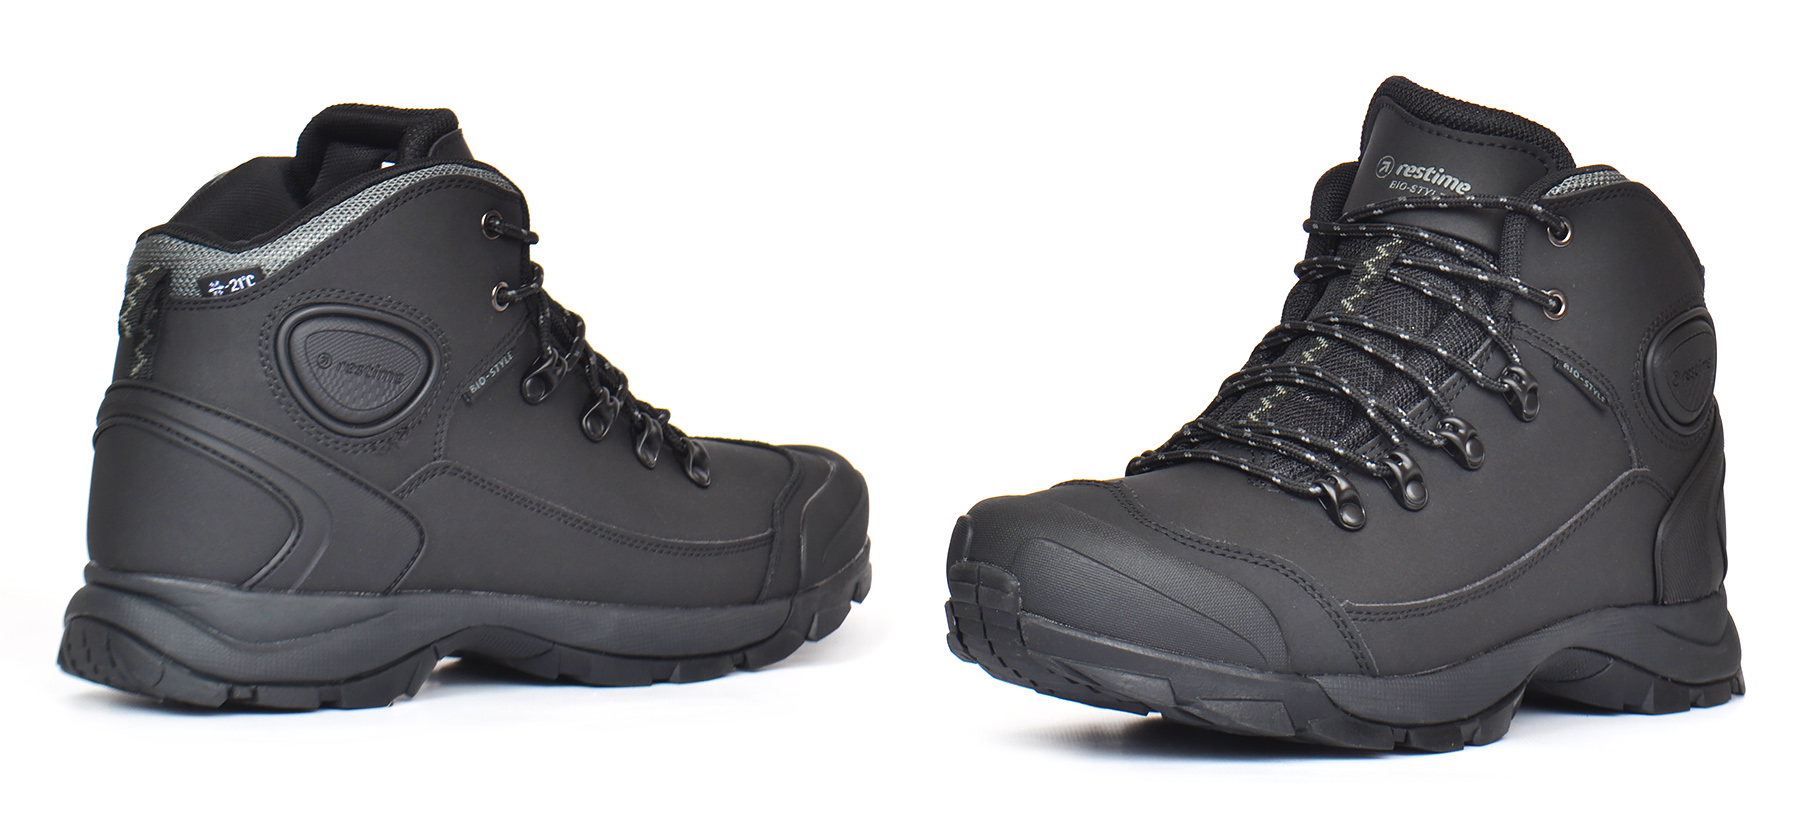 Чоловічі трекінгові шкіряні зимові термо ботинки чорного кольору Restime купити в Україні інтернет-магазин Nanogu